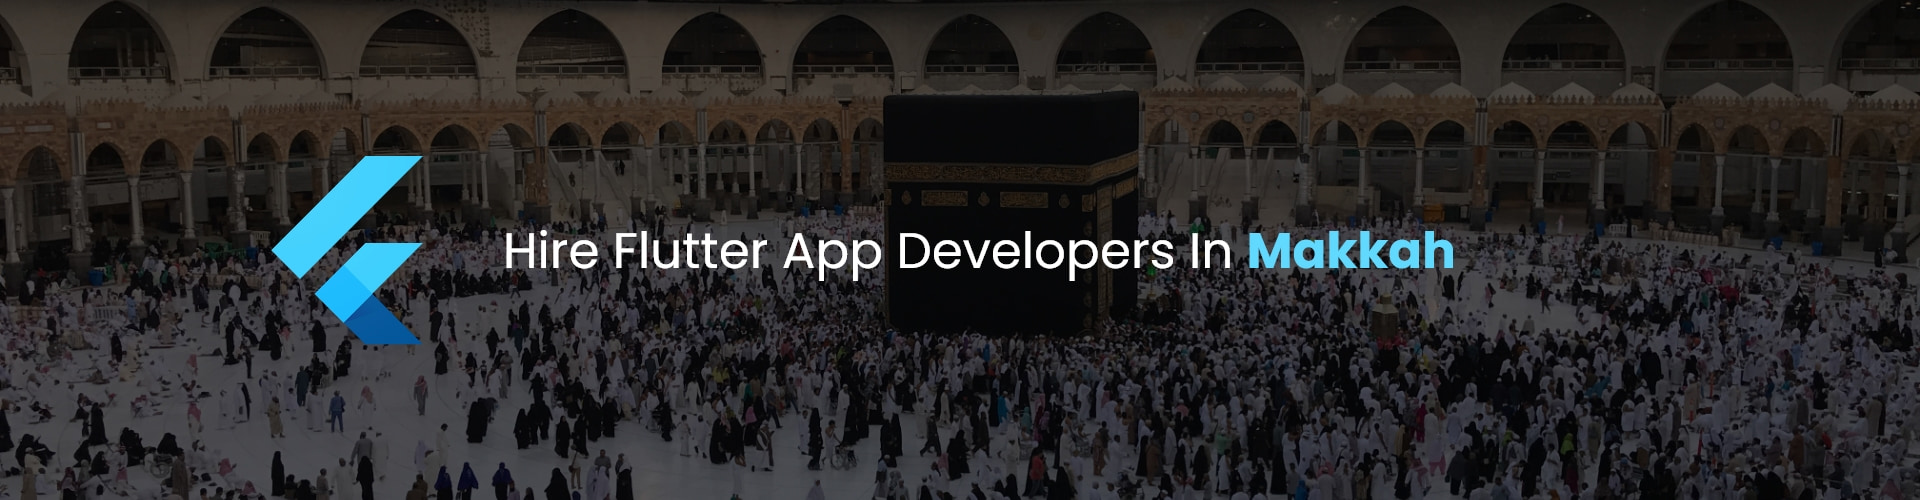 hire flutter app developers in makkah